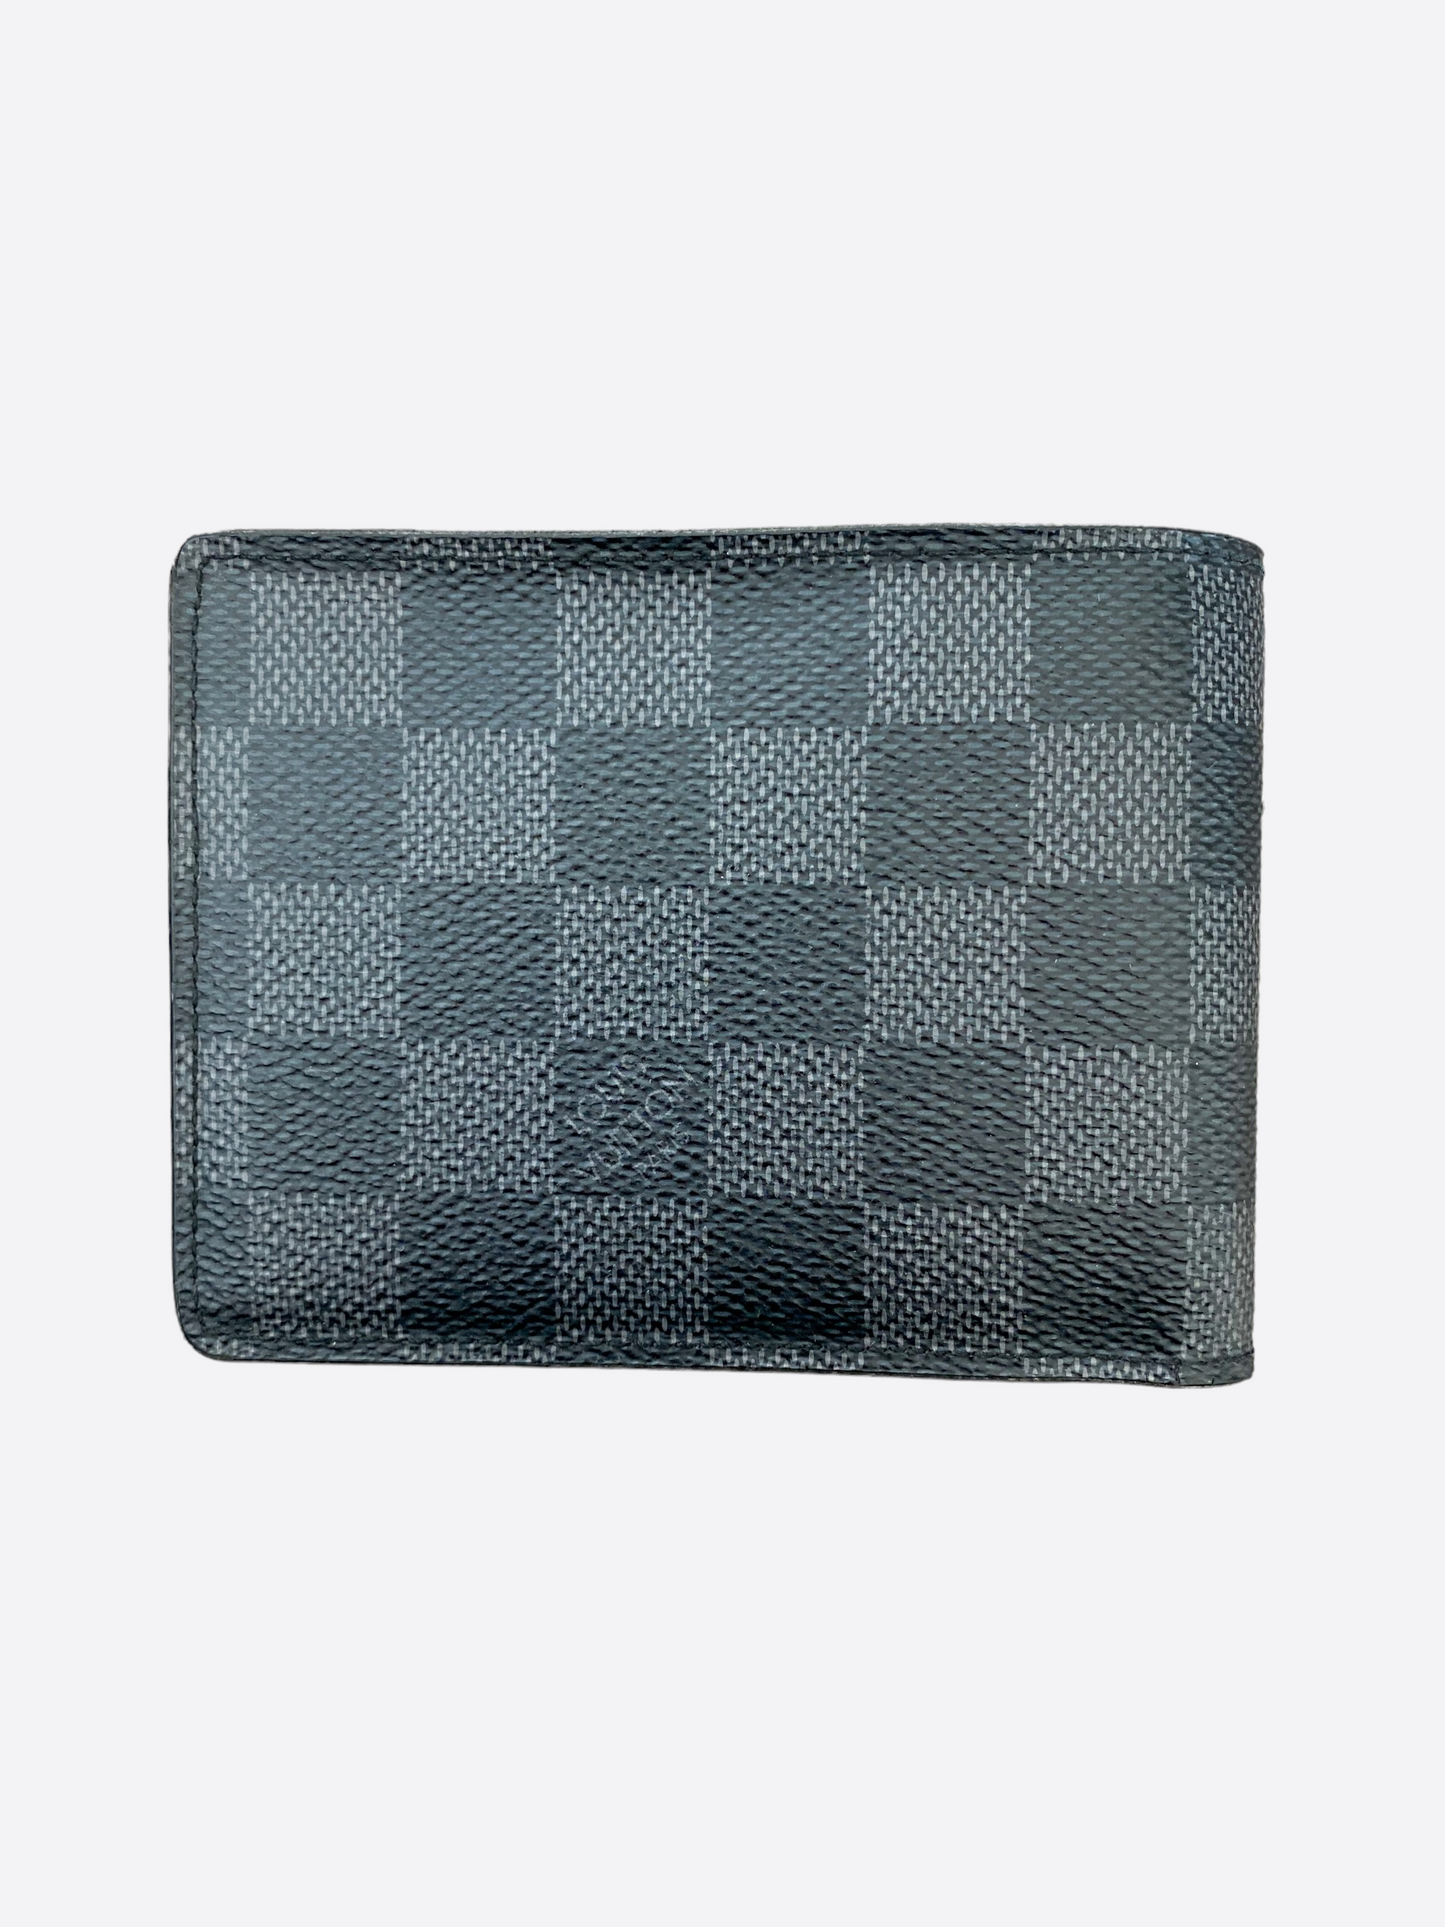 Louis Vuitton Damier Long Gm Graphite Double Snap Wallet LV-W0930P